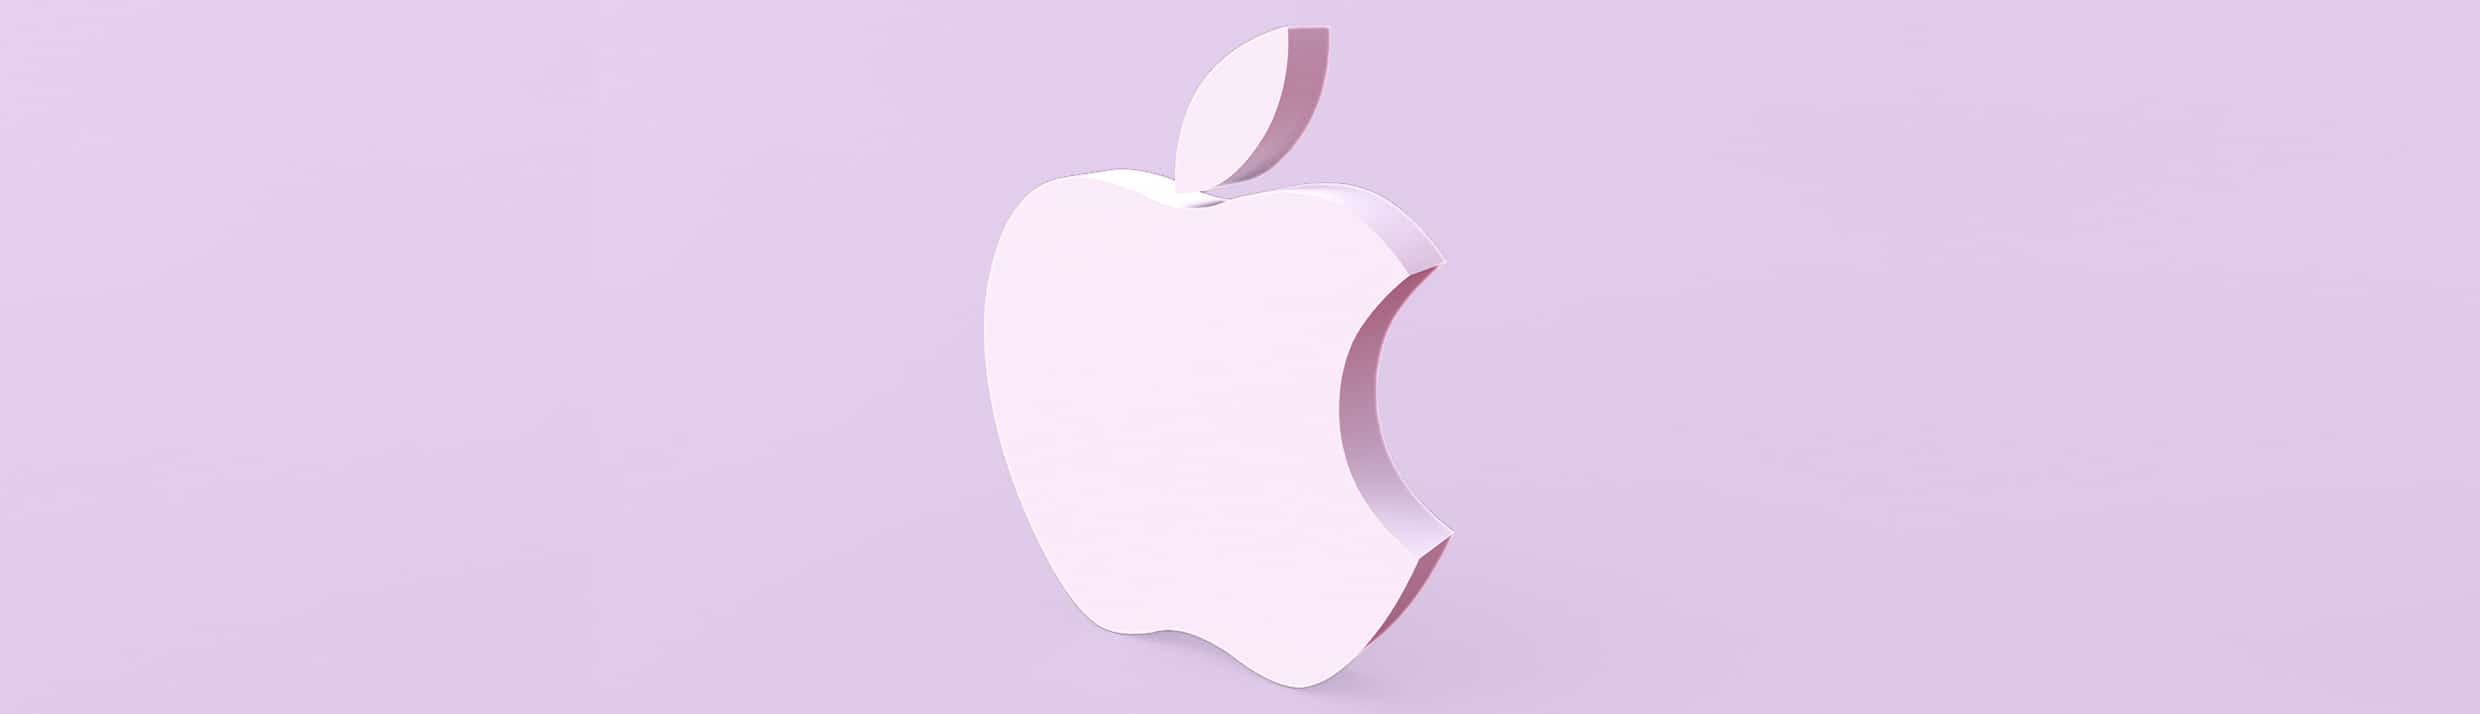 Le logo Apple est positionné au centre, le logo est d'une couleur violet clair qu'on retrouve également en arrière-plan.